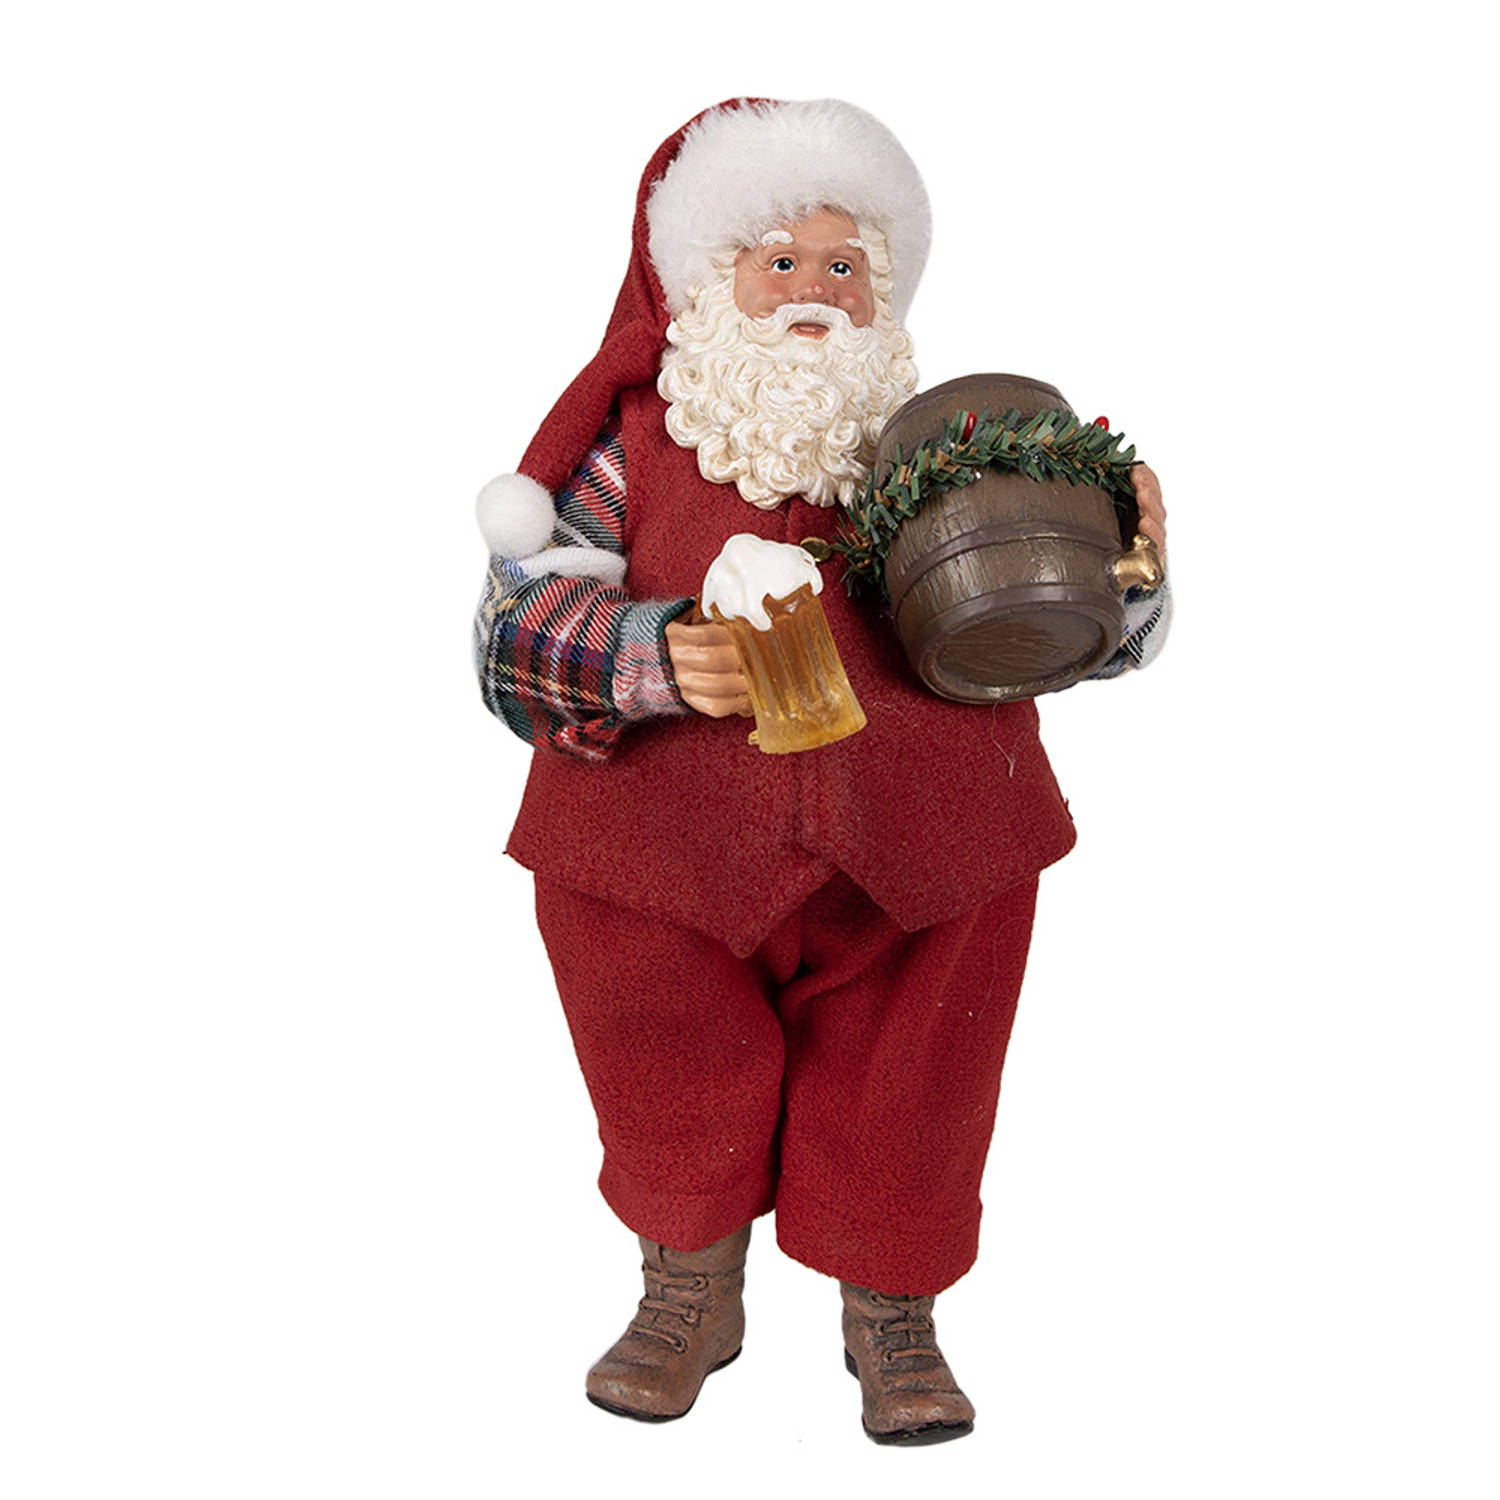 HAES DECO - Kerstman deco Figuur - Formaat 16x8x28 cm - Collectie: Who is Santa - Kleur Rood - Materiaal Textiel op kunststof - Kerst Figuur, Kerstdecoratie